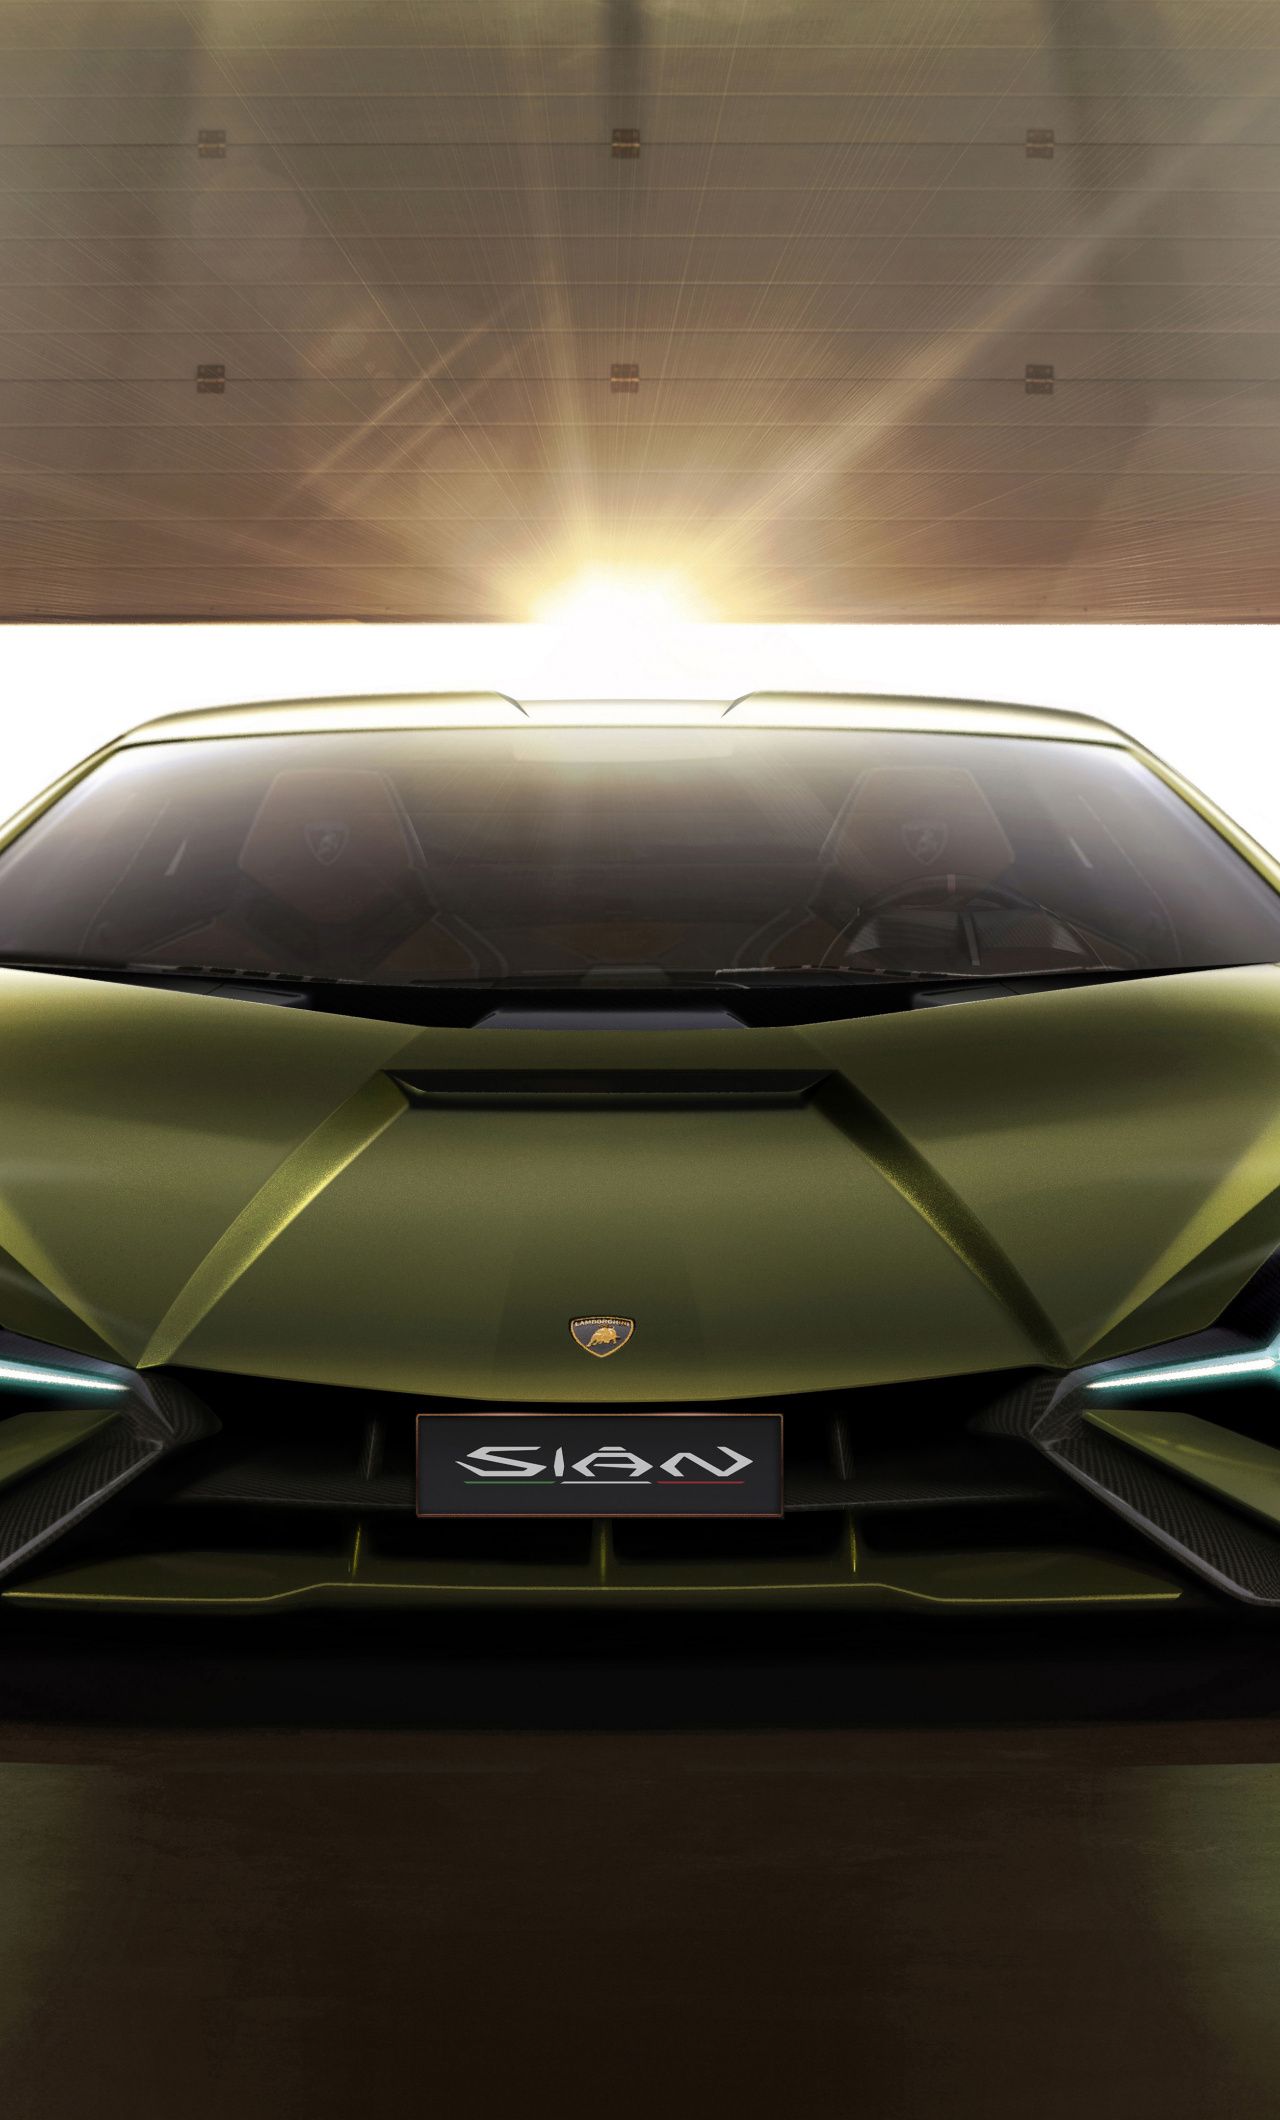 Lamborghini Sian, front, 2019 car wallpaper. Car